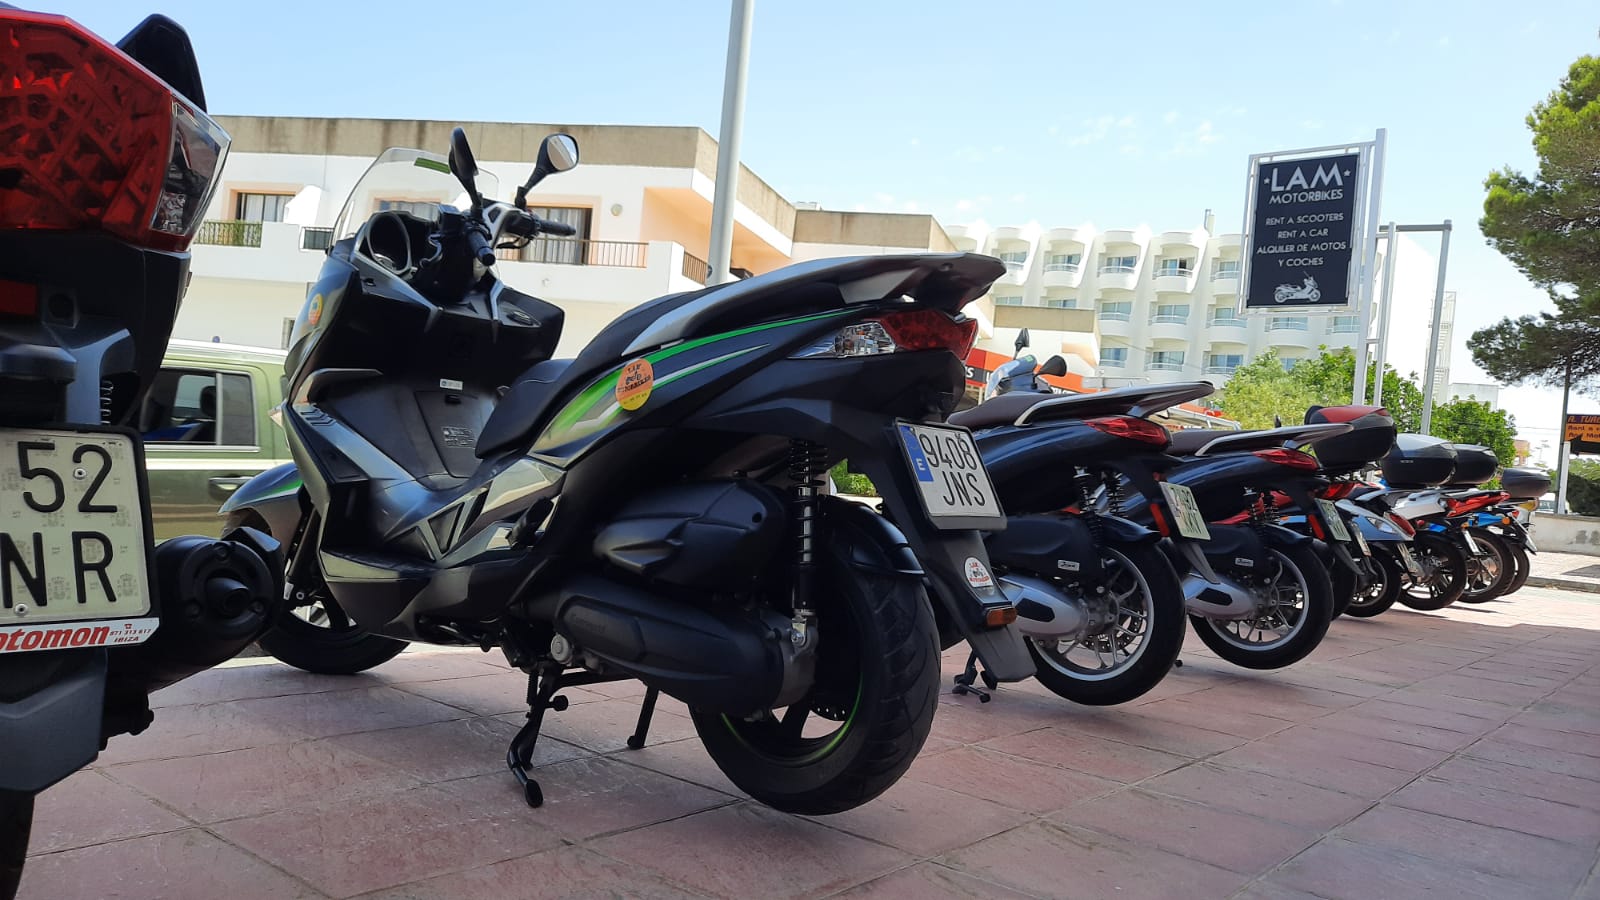 Lam Motorbikes